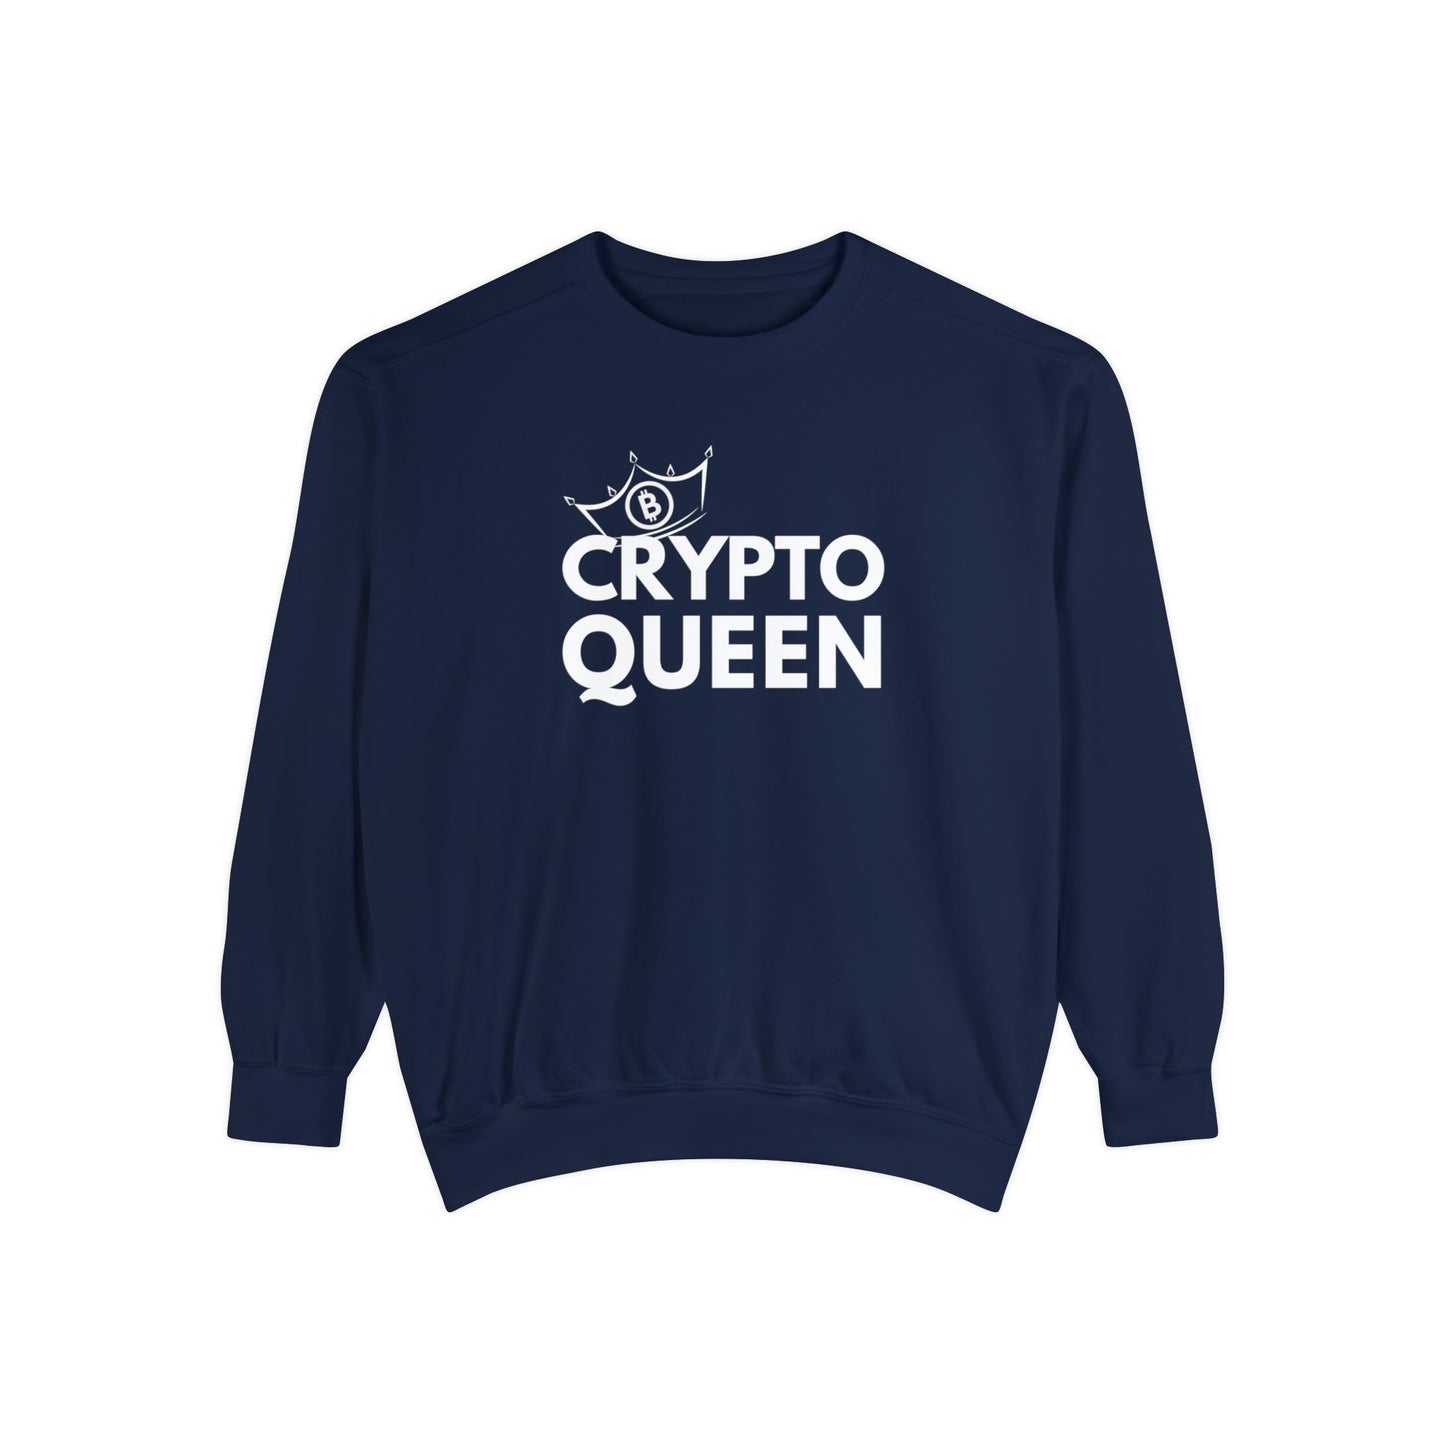 Crypto Queen Gildan Comfort Colors 1566 Unisex Sweatshirt